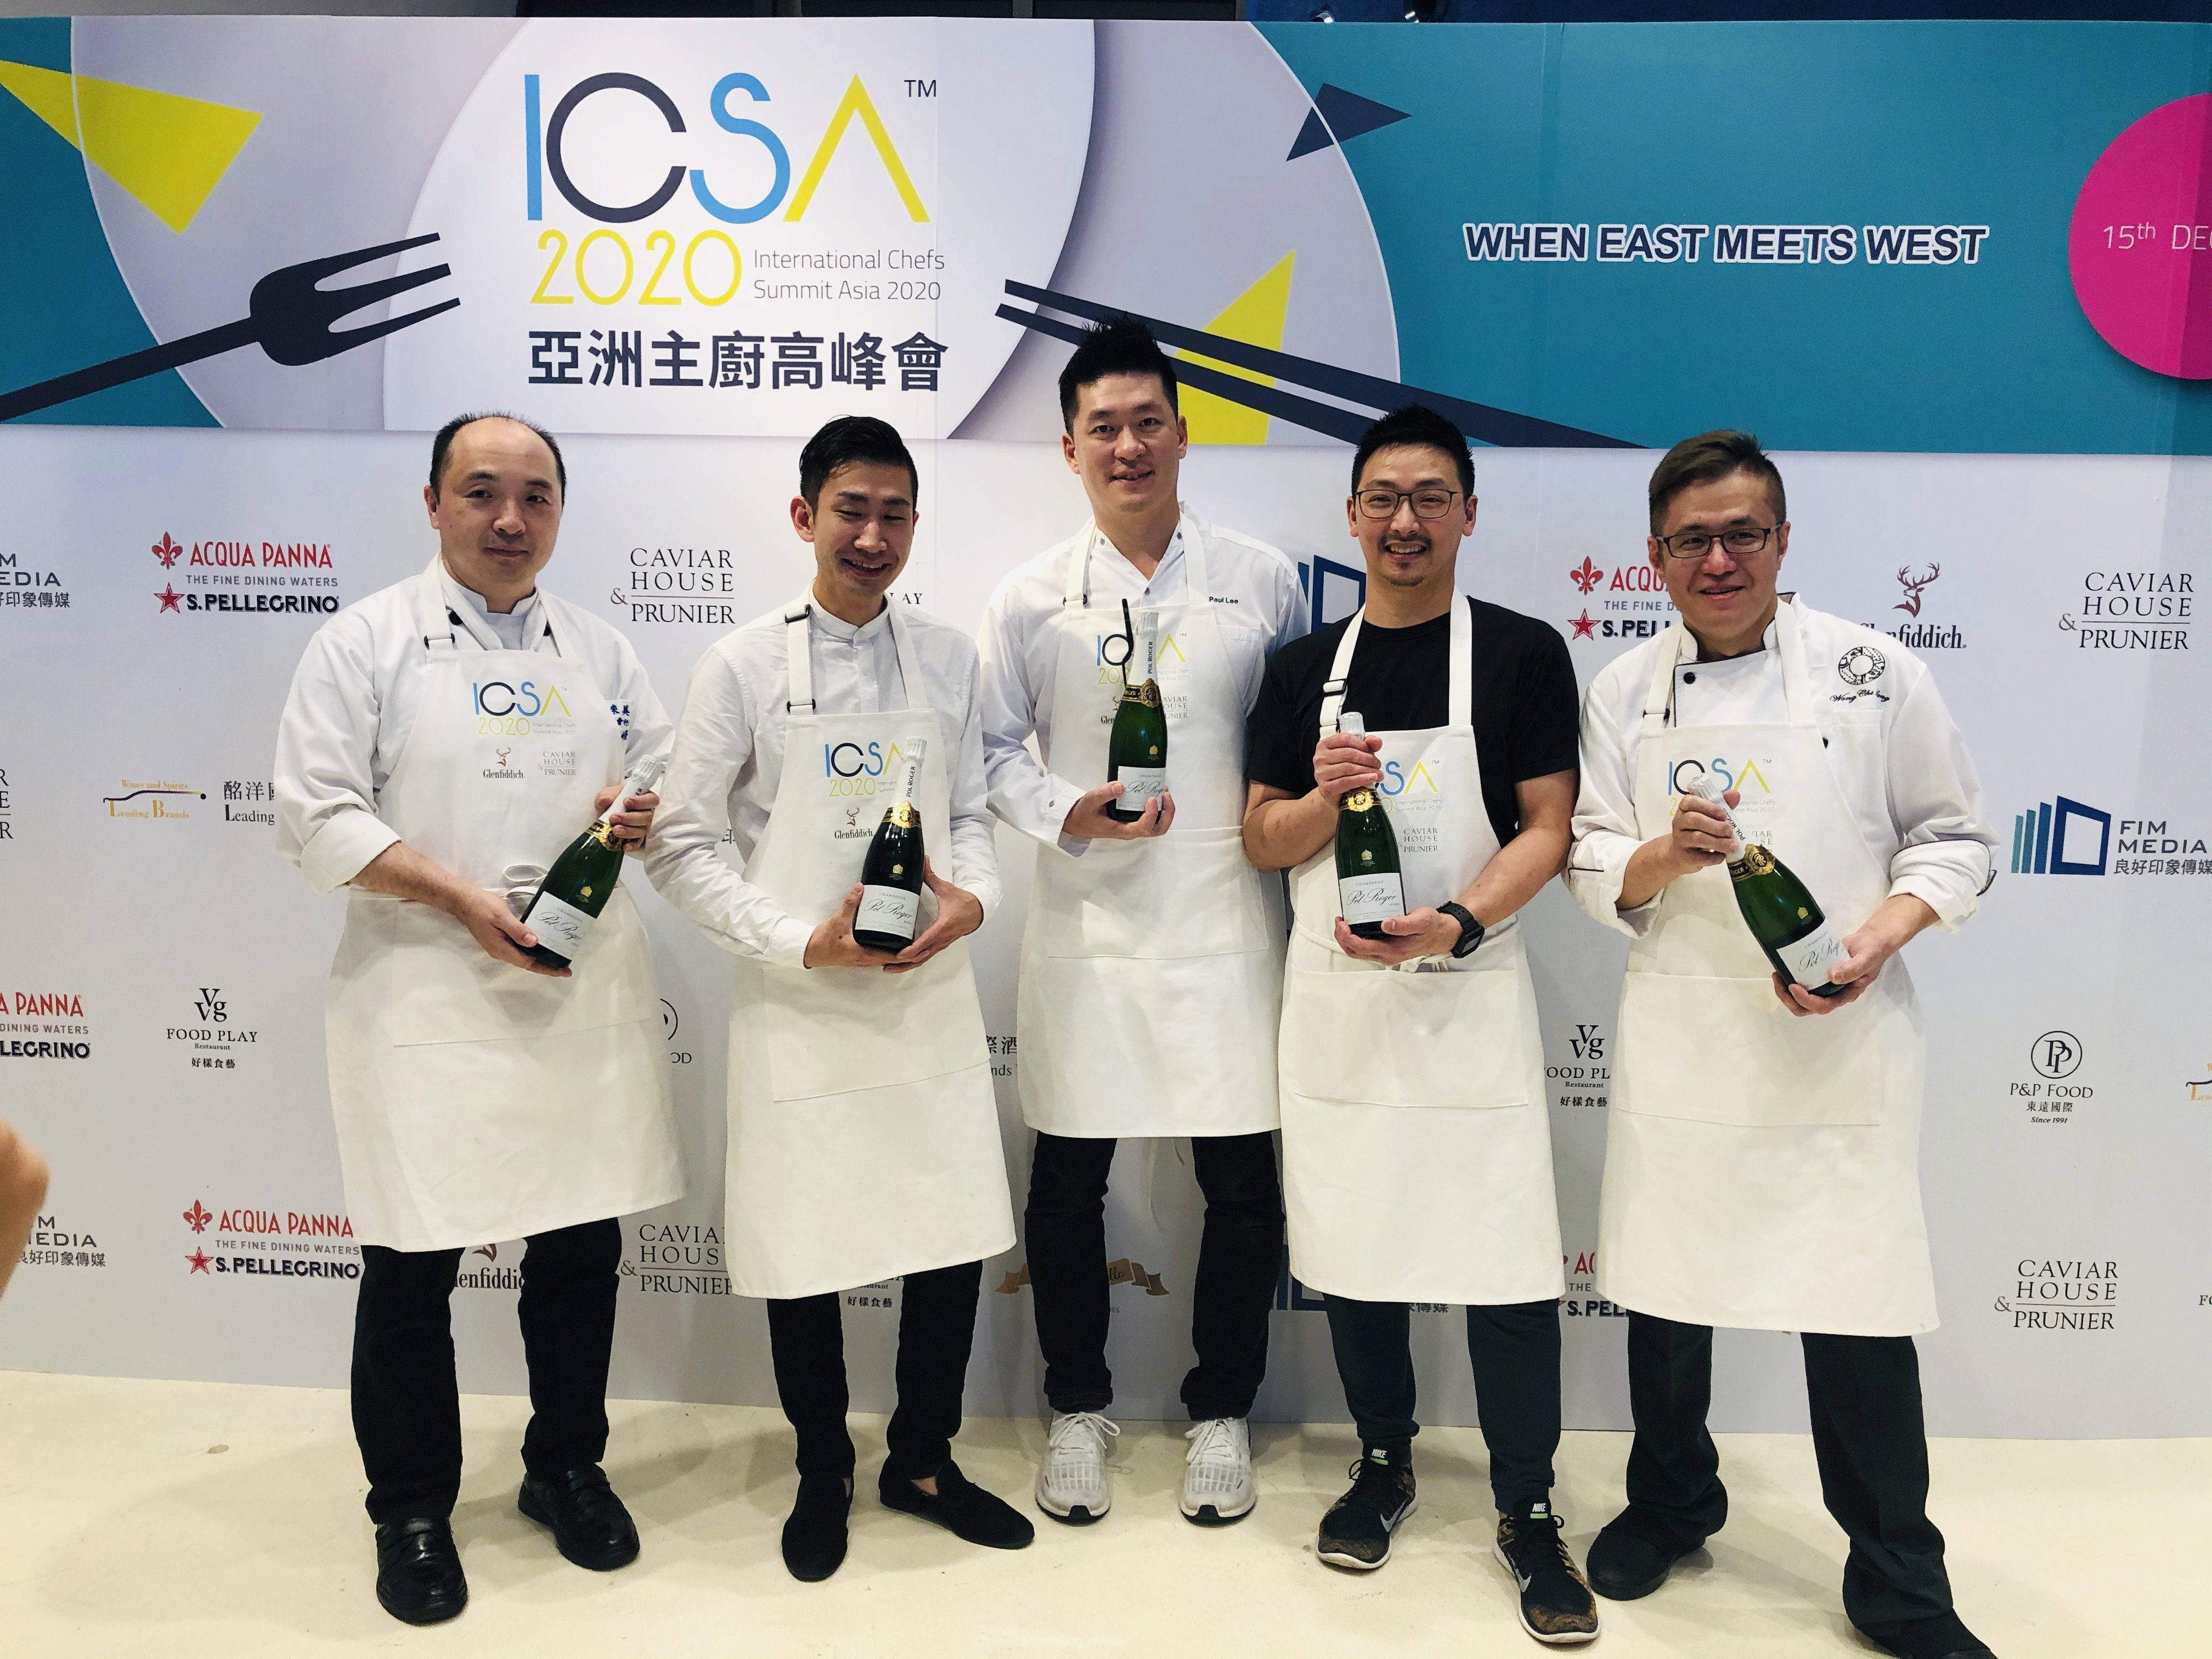 亞洲最盛大的主廚高峰會ICSA2020 23位亞洲頂尖主廚跨界參與 和世界站在一起